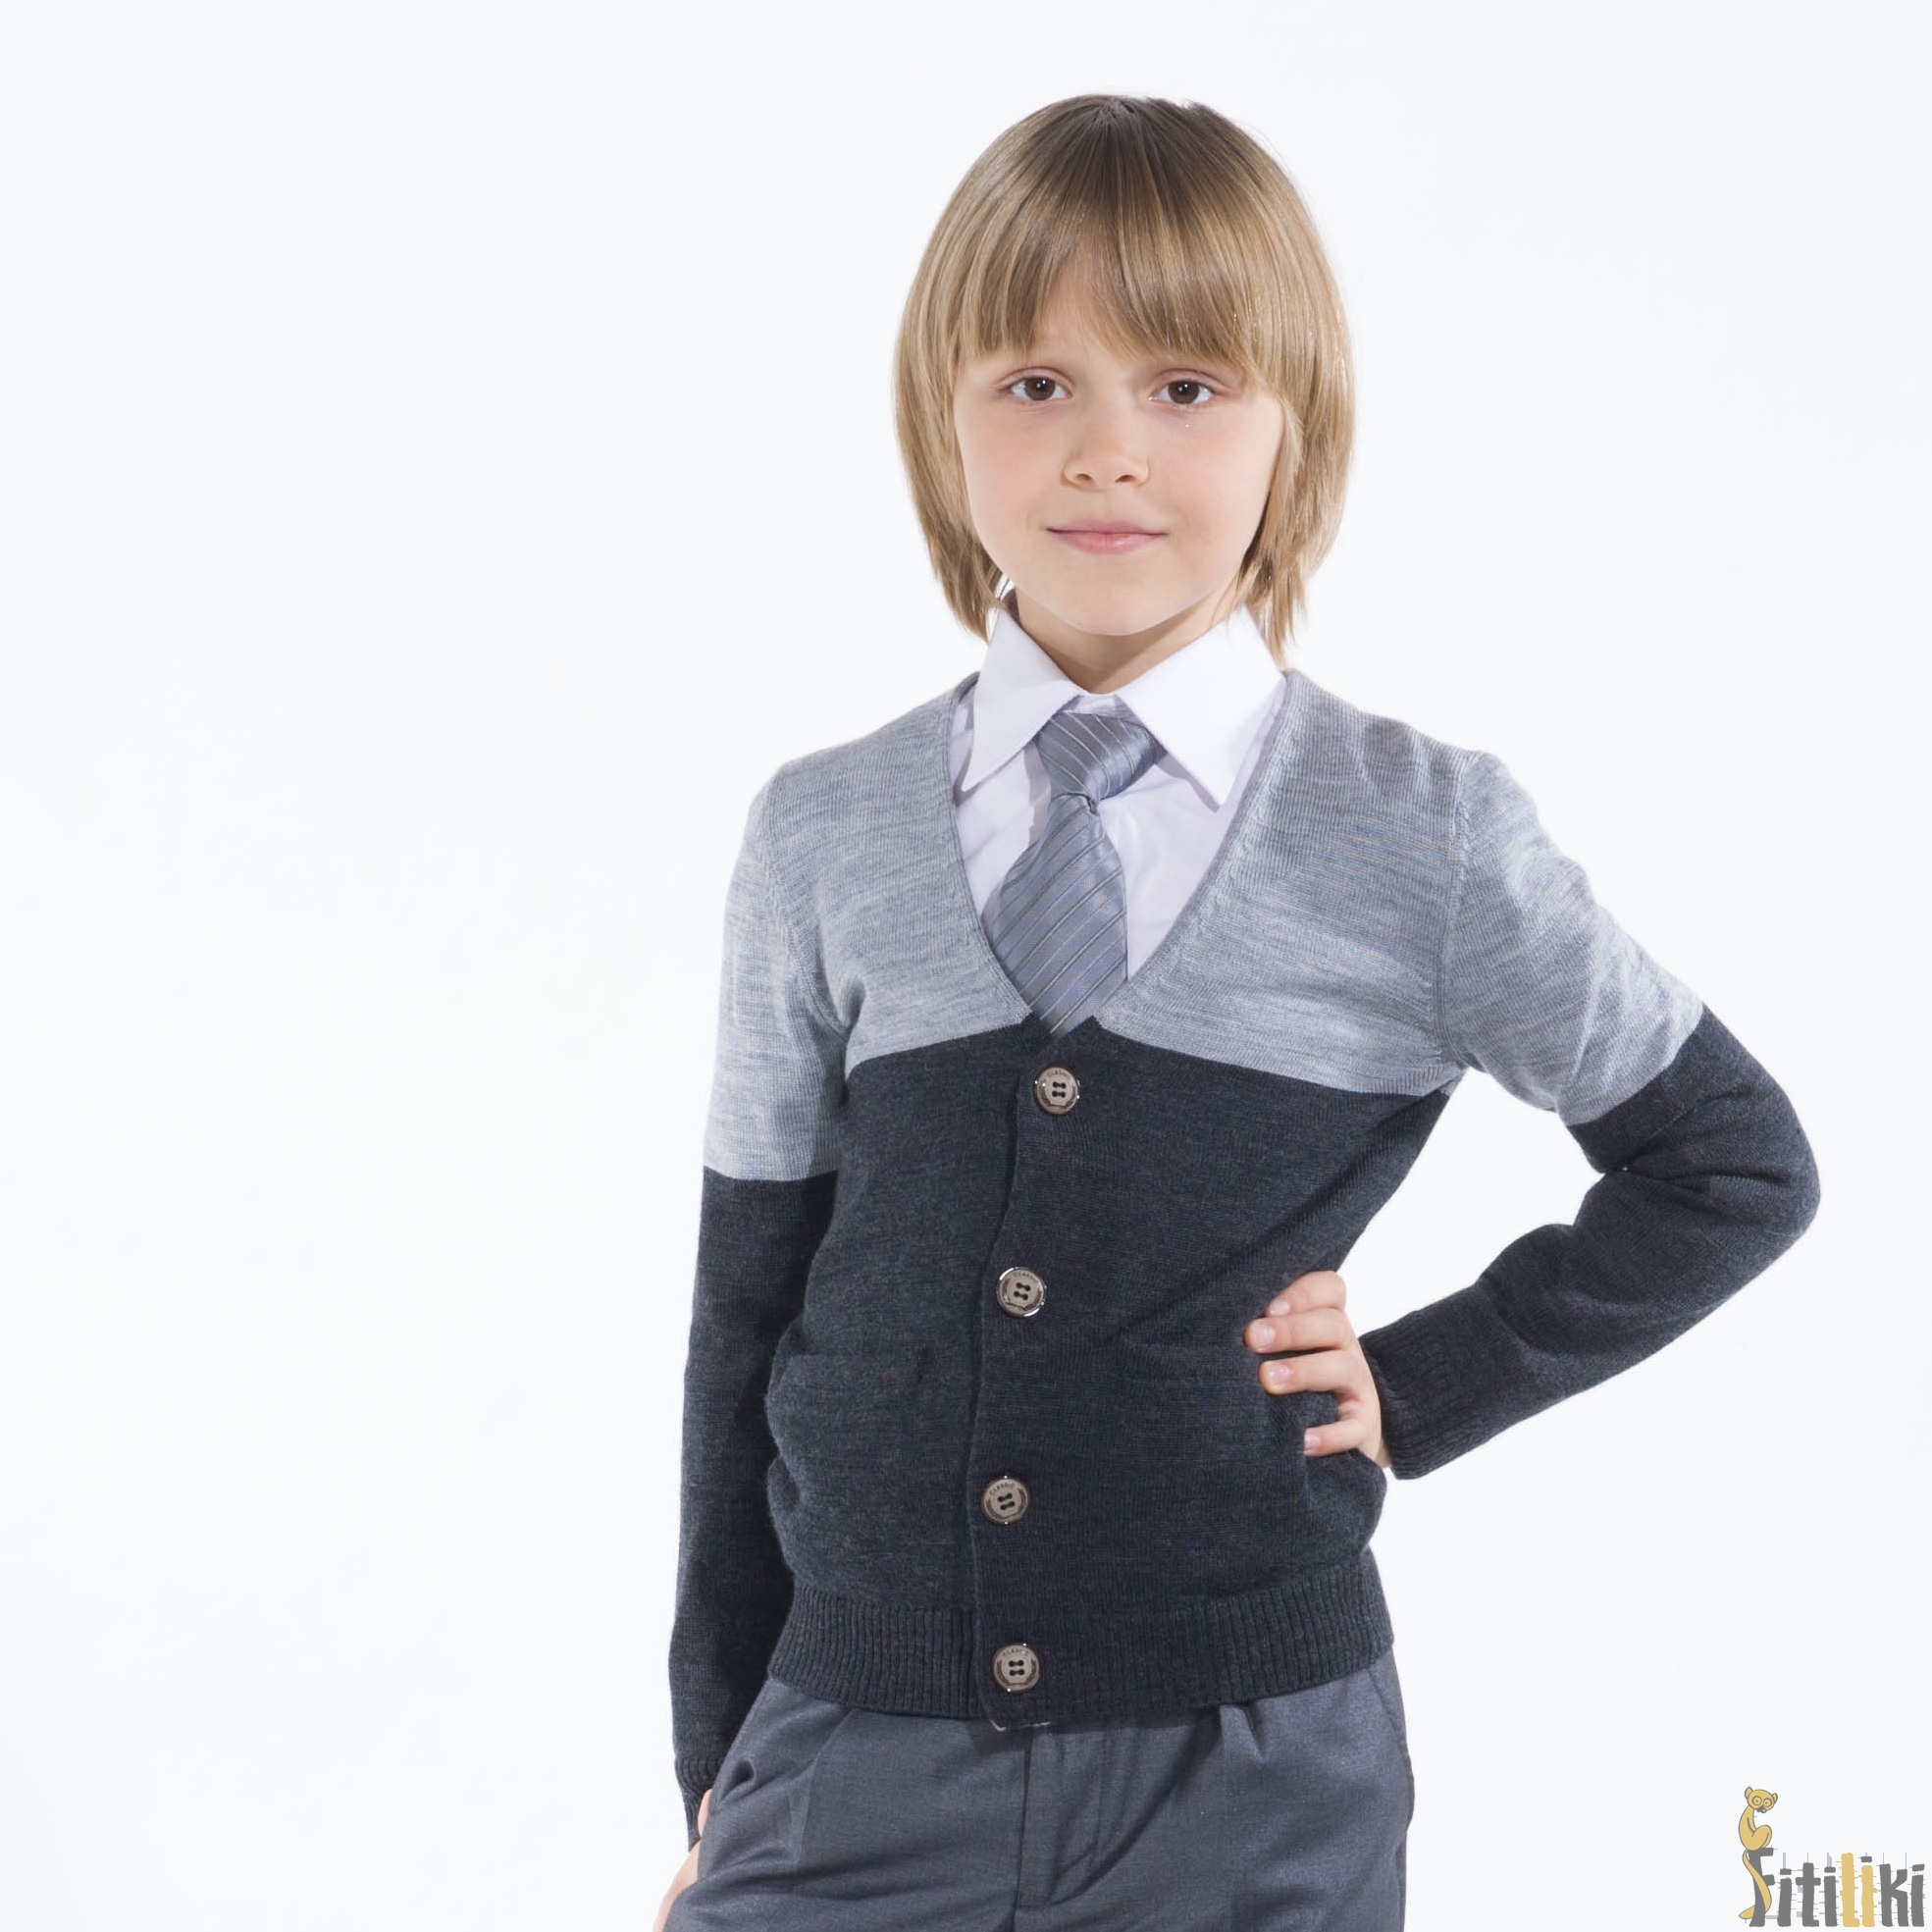 sezonmoda.ru - Брендовая школьная одежда